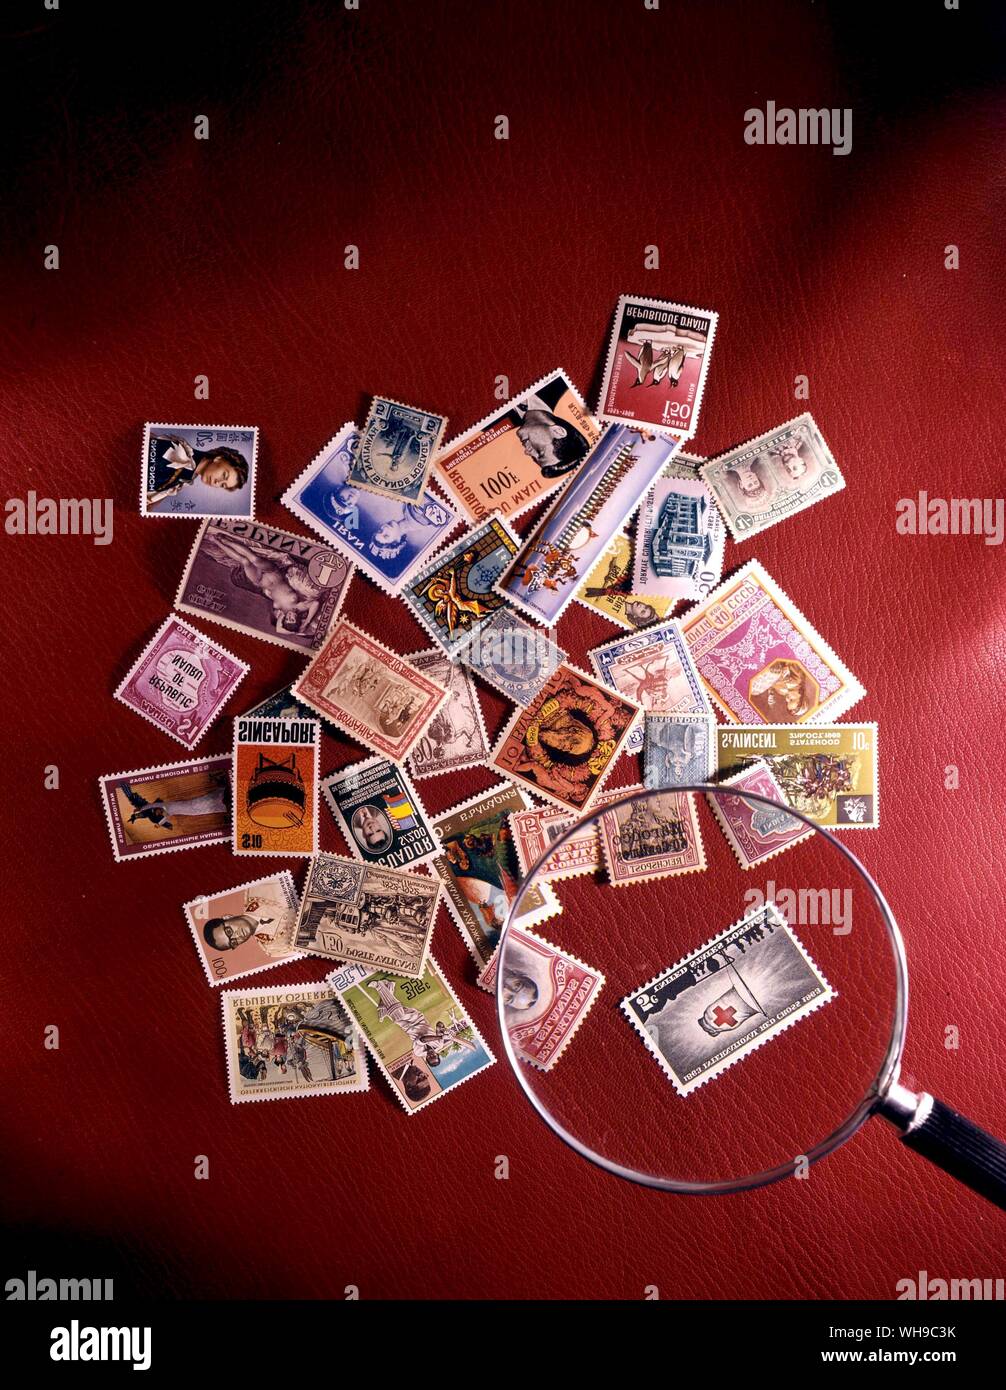 Un certain nombre de timbres du monde entier au hasard empilées dans un tas avec une loupe sur un fond rouge. Banque D'Images